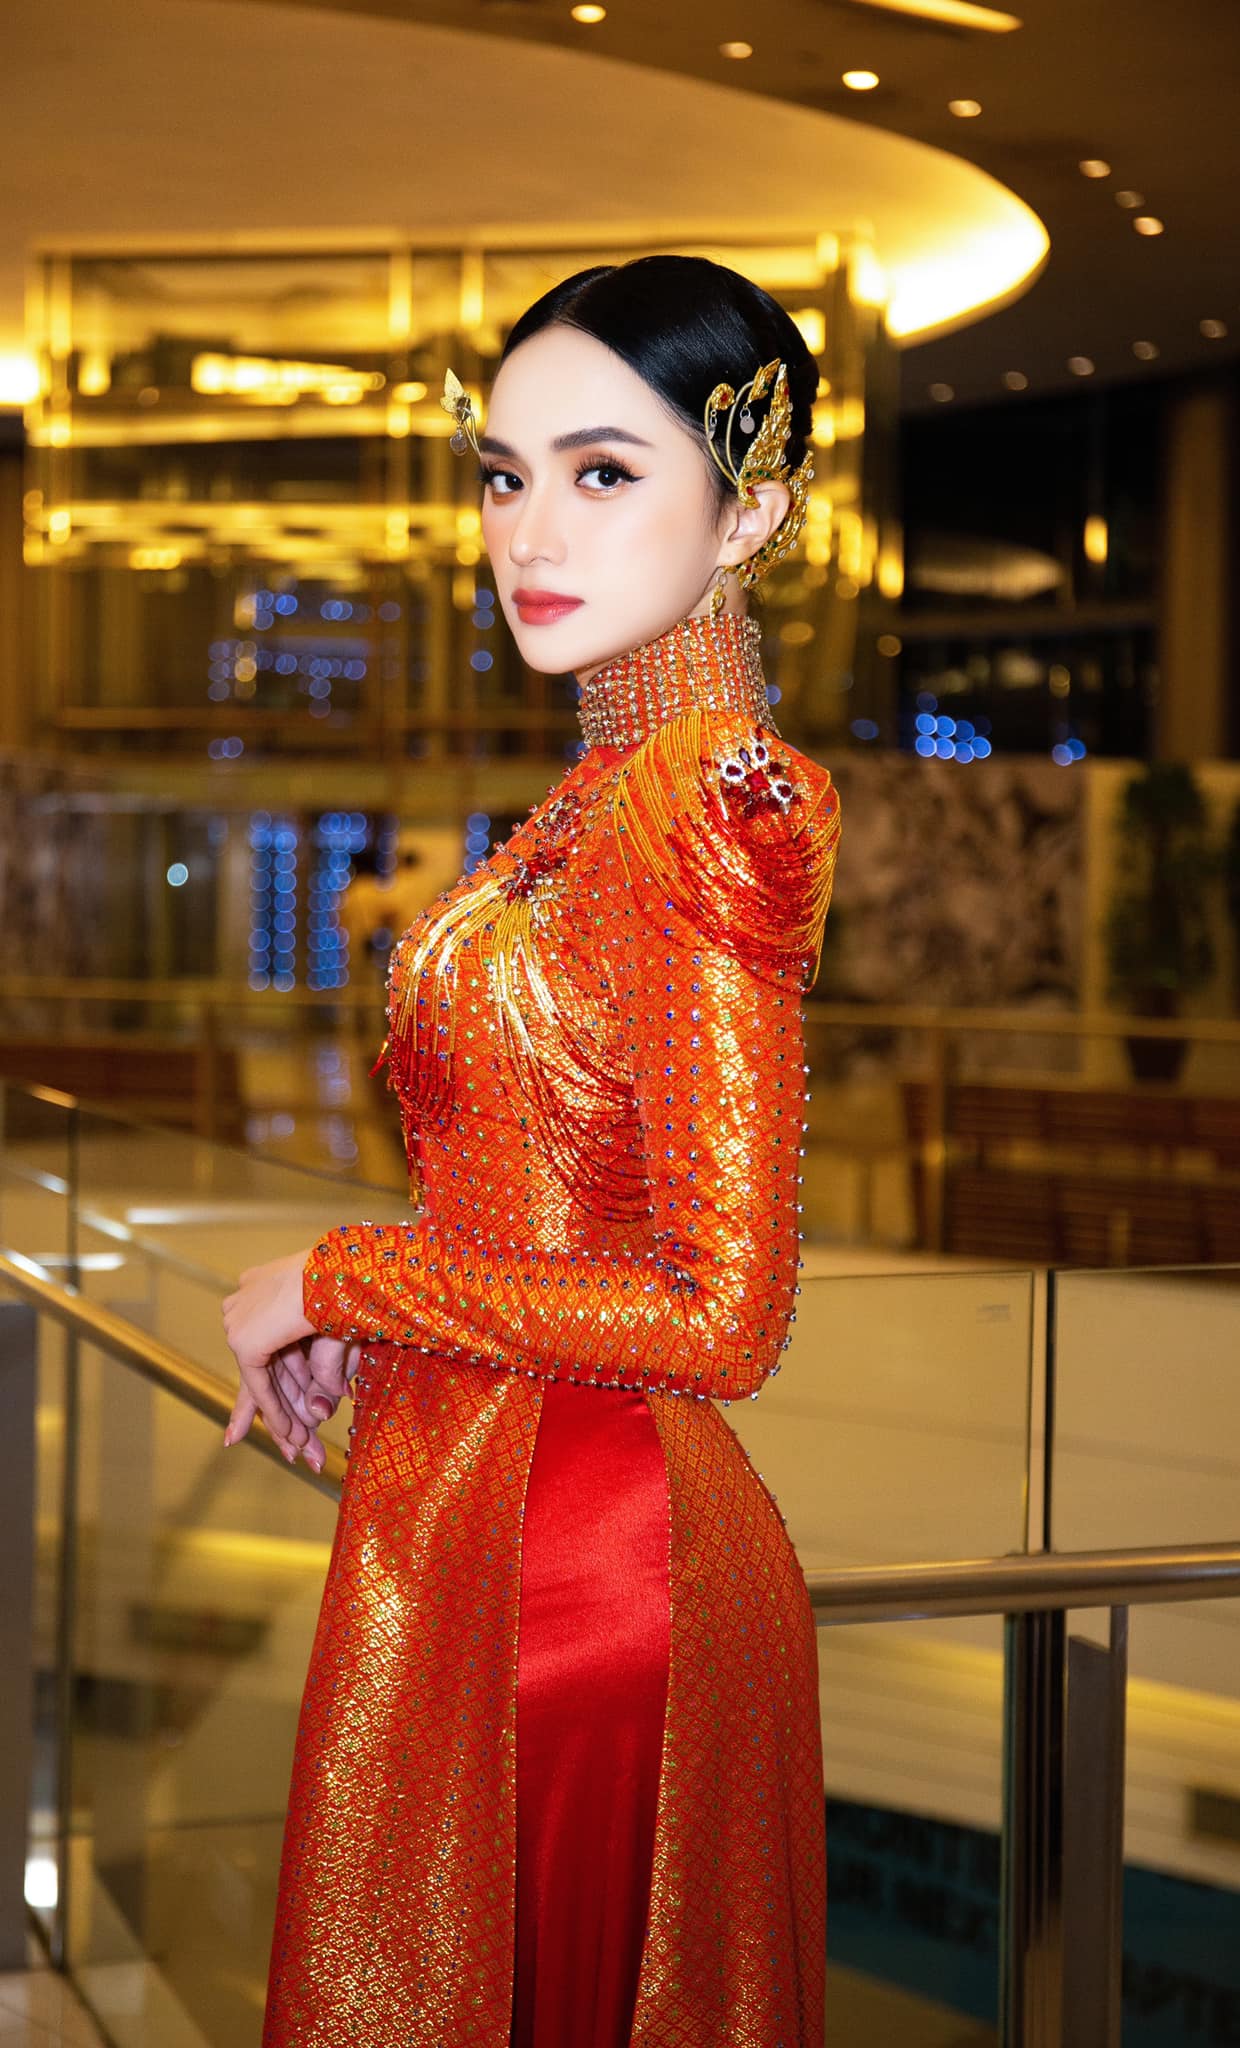 Hương Giang gây tranh cãi vì bất chấp tổ chức cuộc thi hoa hậu dù chưa được cấp phép.